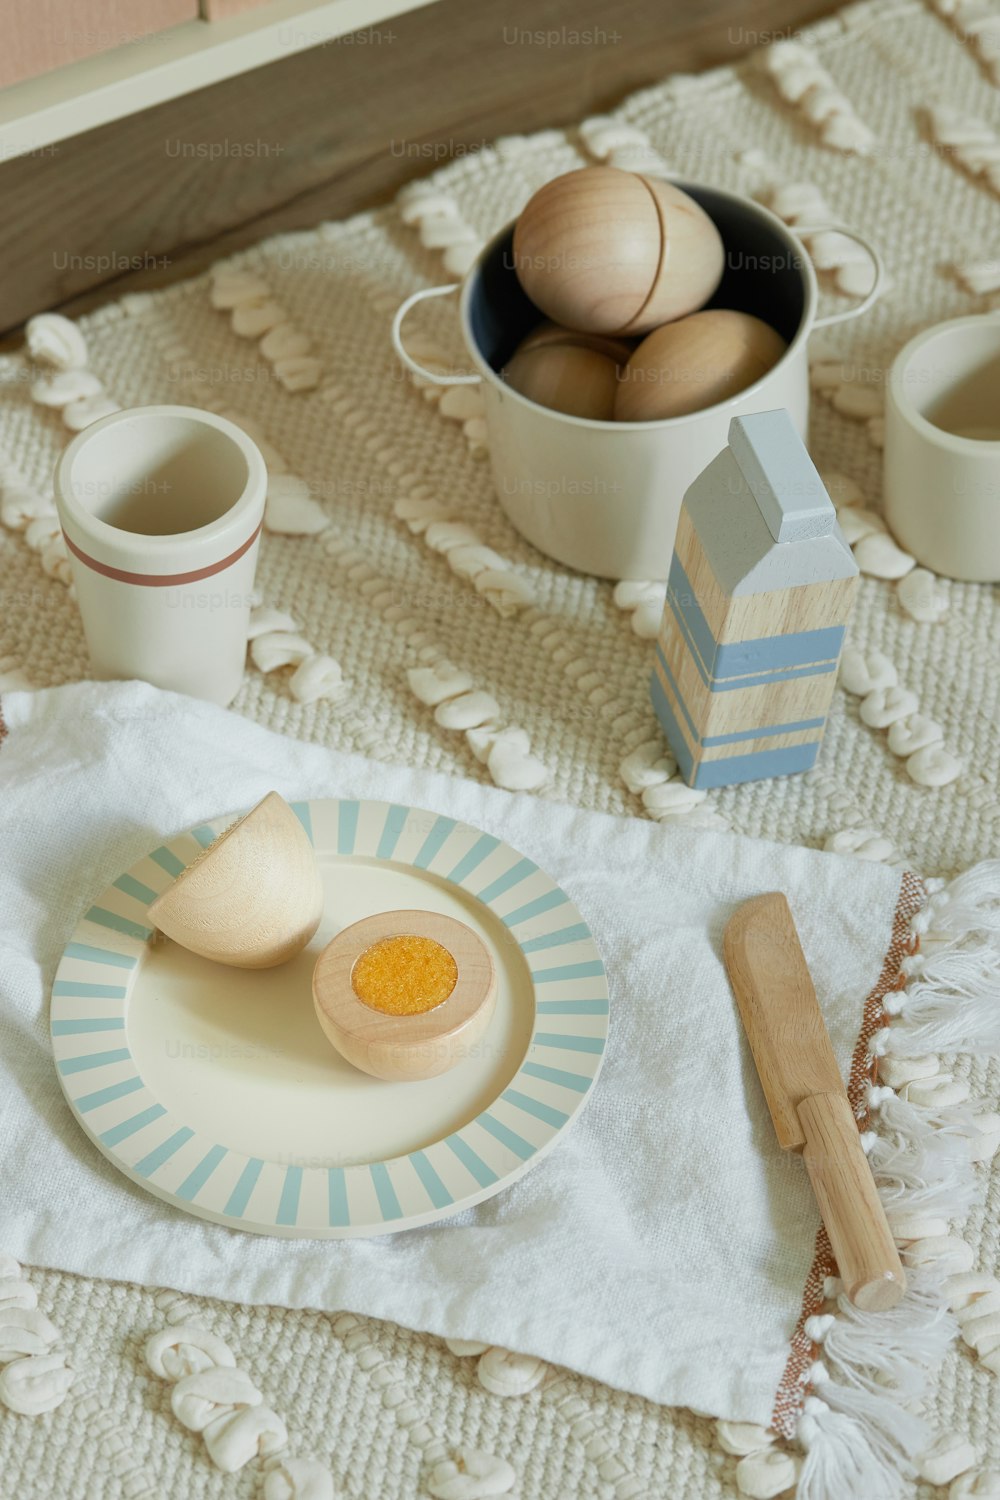 달걀 한 그릇 옆에 달걀 한 접시를 얹은 테이블